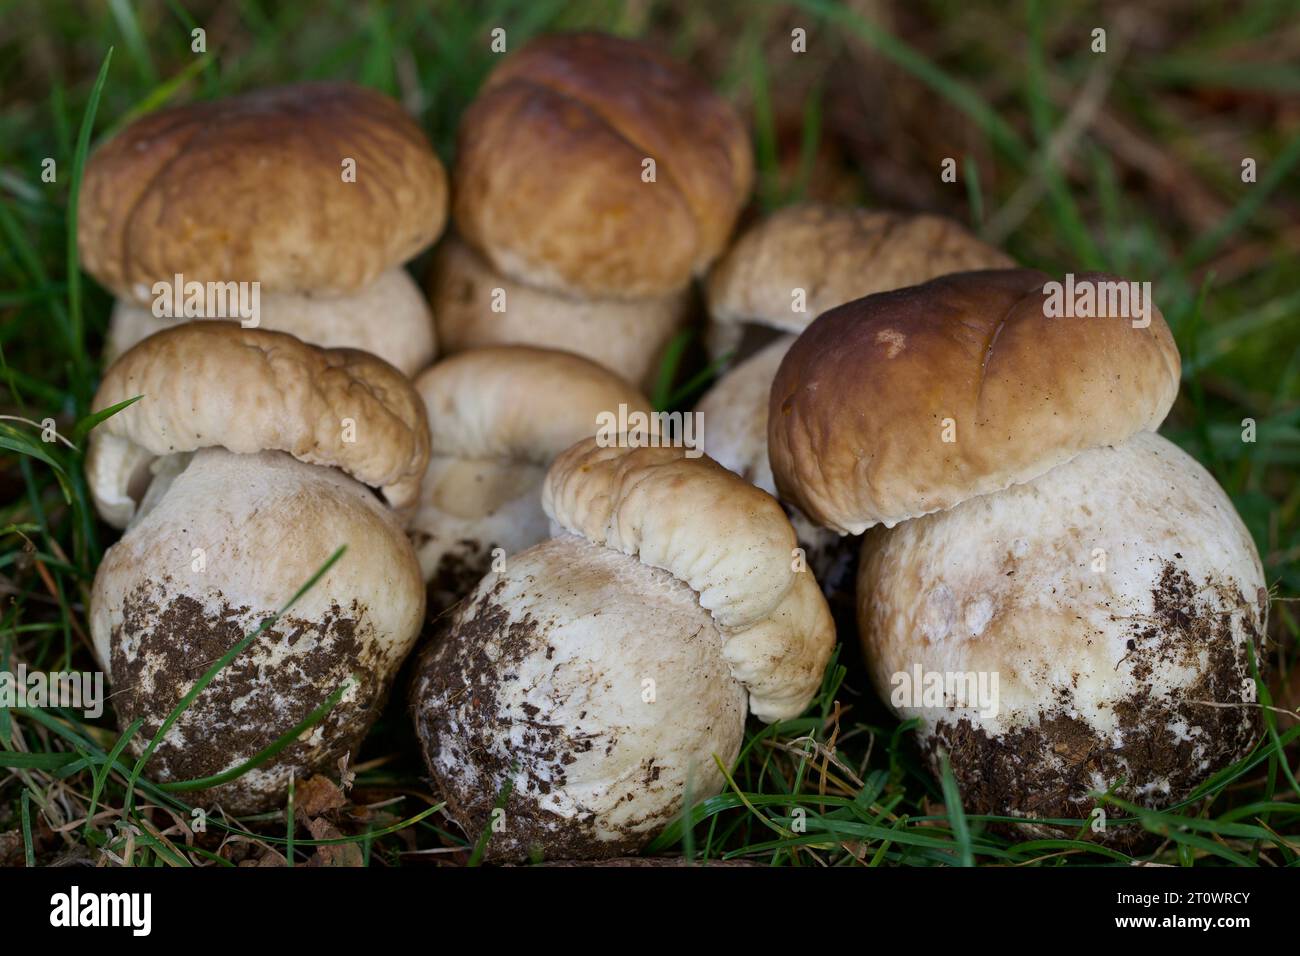 Die gefeierte Wild Mushroom, der Cep, Penny Bun, Steinpilze - alle verwendeten der Boletus edulis Pilz, sehr für seine kulinarischen Qualitäten geschätzt zu beschreiben Stockfoto